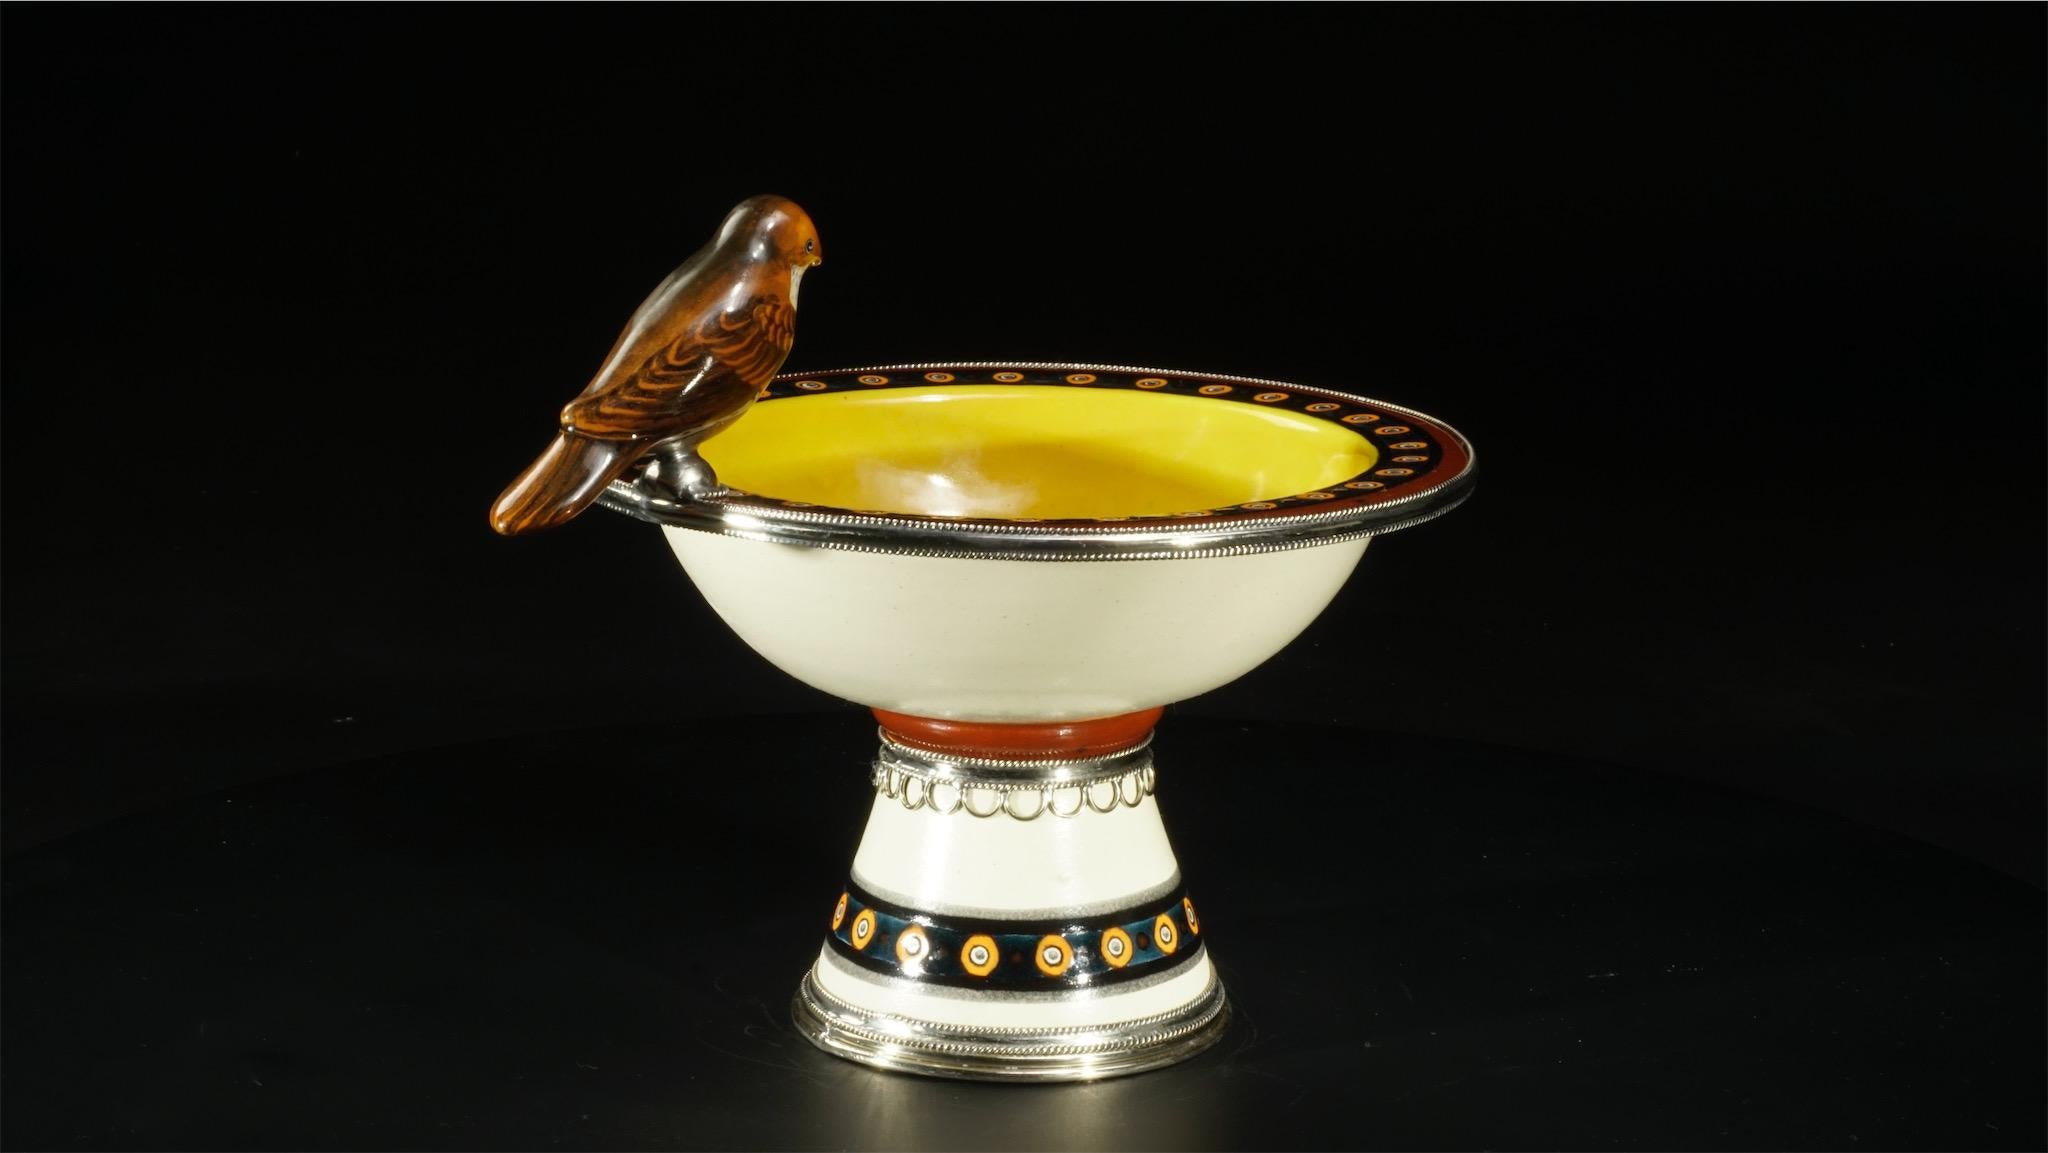 Baroque Revival Ceramic and White Metal 'Alpaca' Bird Bowl Centrepiece